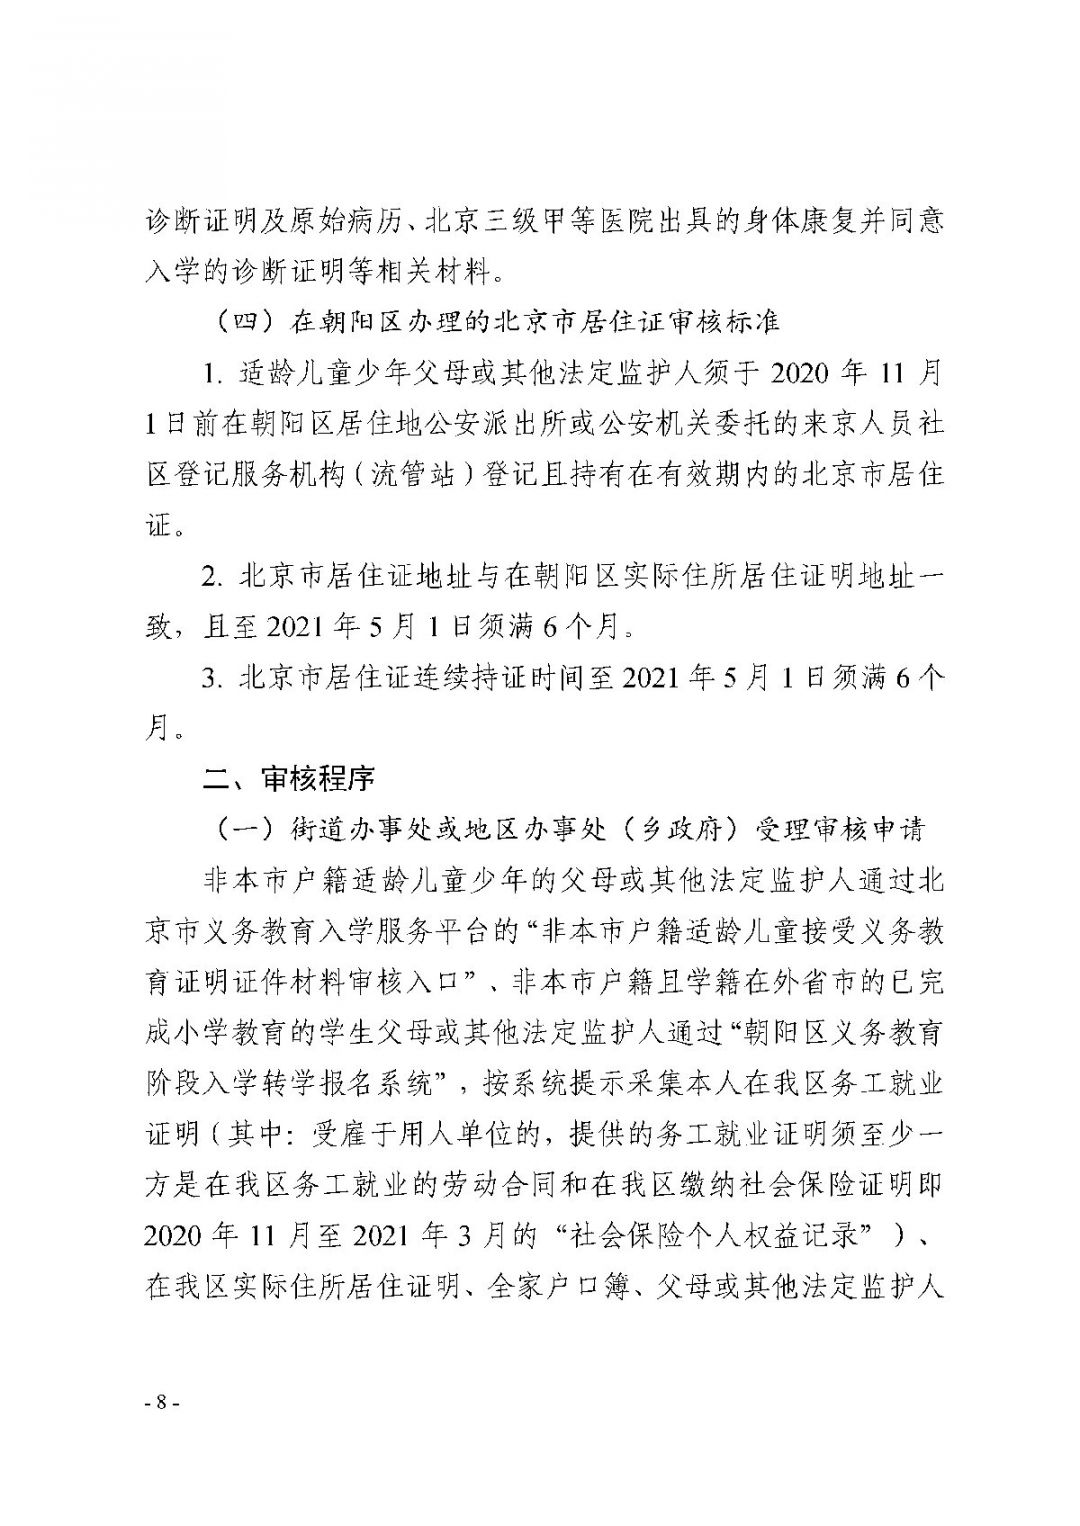 2021朝阳区非京籍适龄儿童少年入学证明证件材料审核实施细则